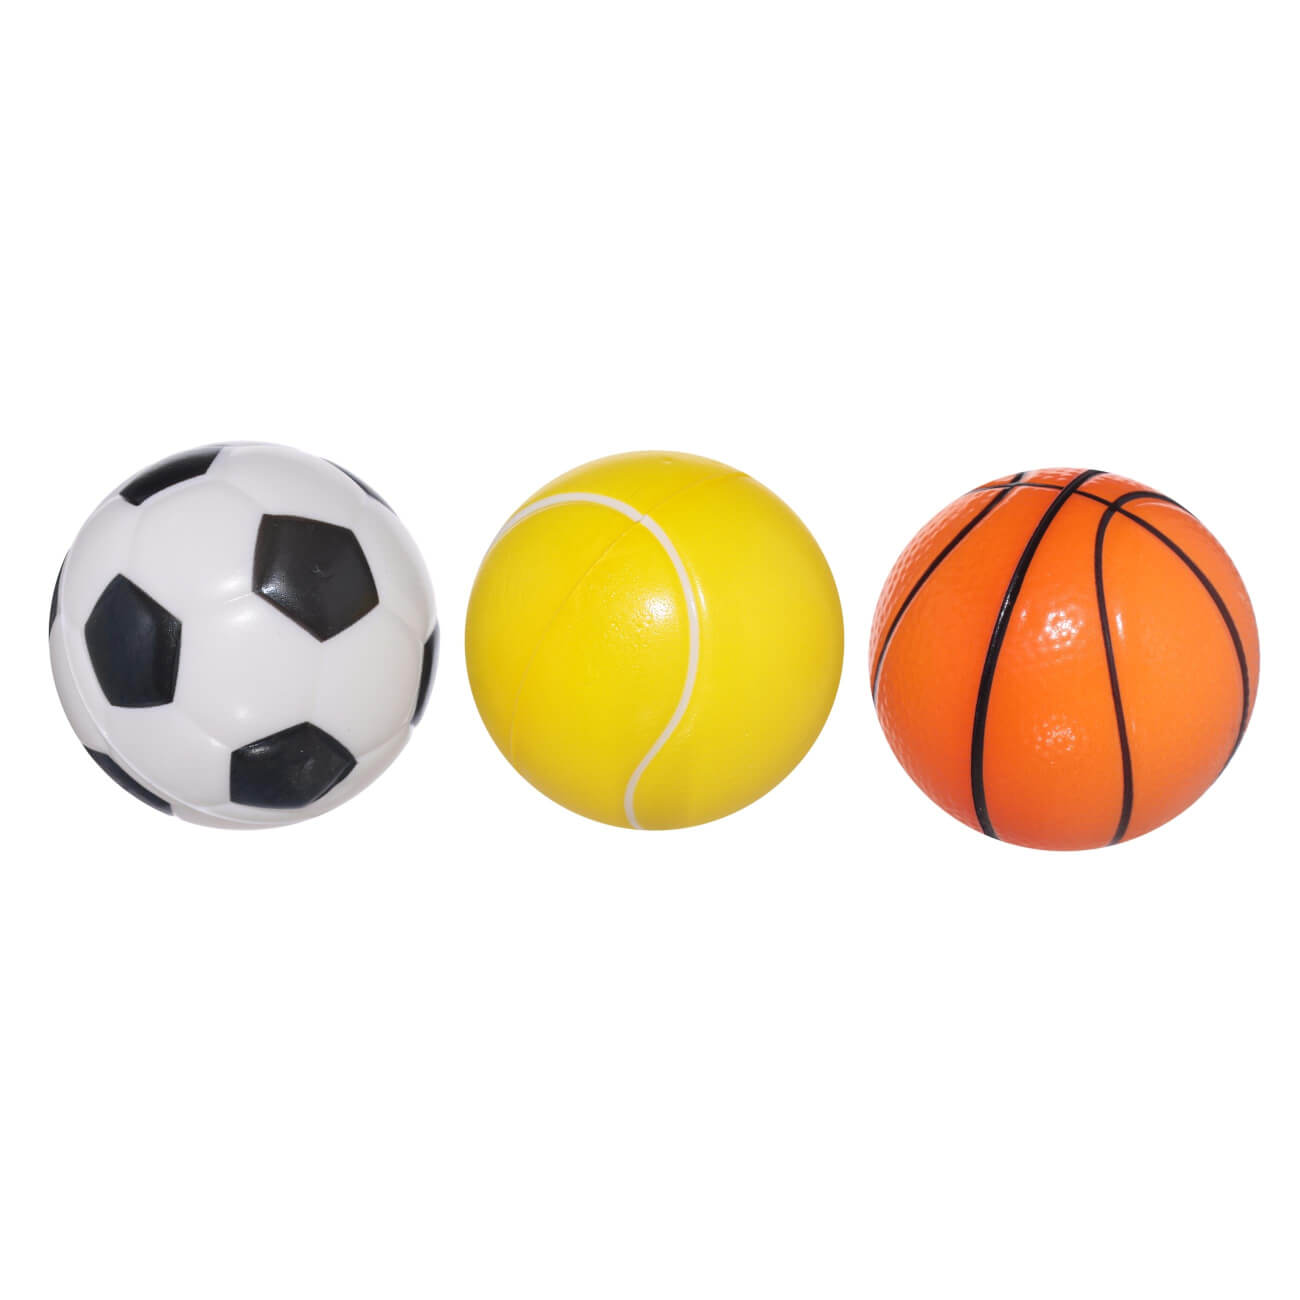 Мяч, 6 см, 3 шт, полиуретан, цветной, Футбол/Баскетбол/Теннис, Game черно белая пара баскетбол волейбол футбол теннис футбол мяч плетеный браслет 2 pack